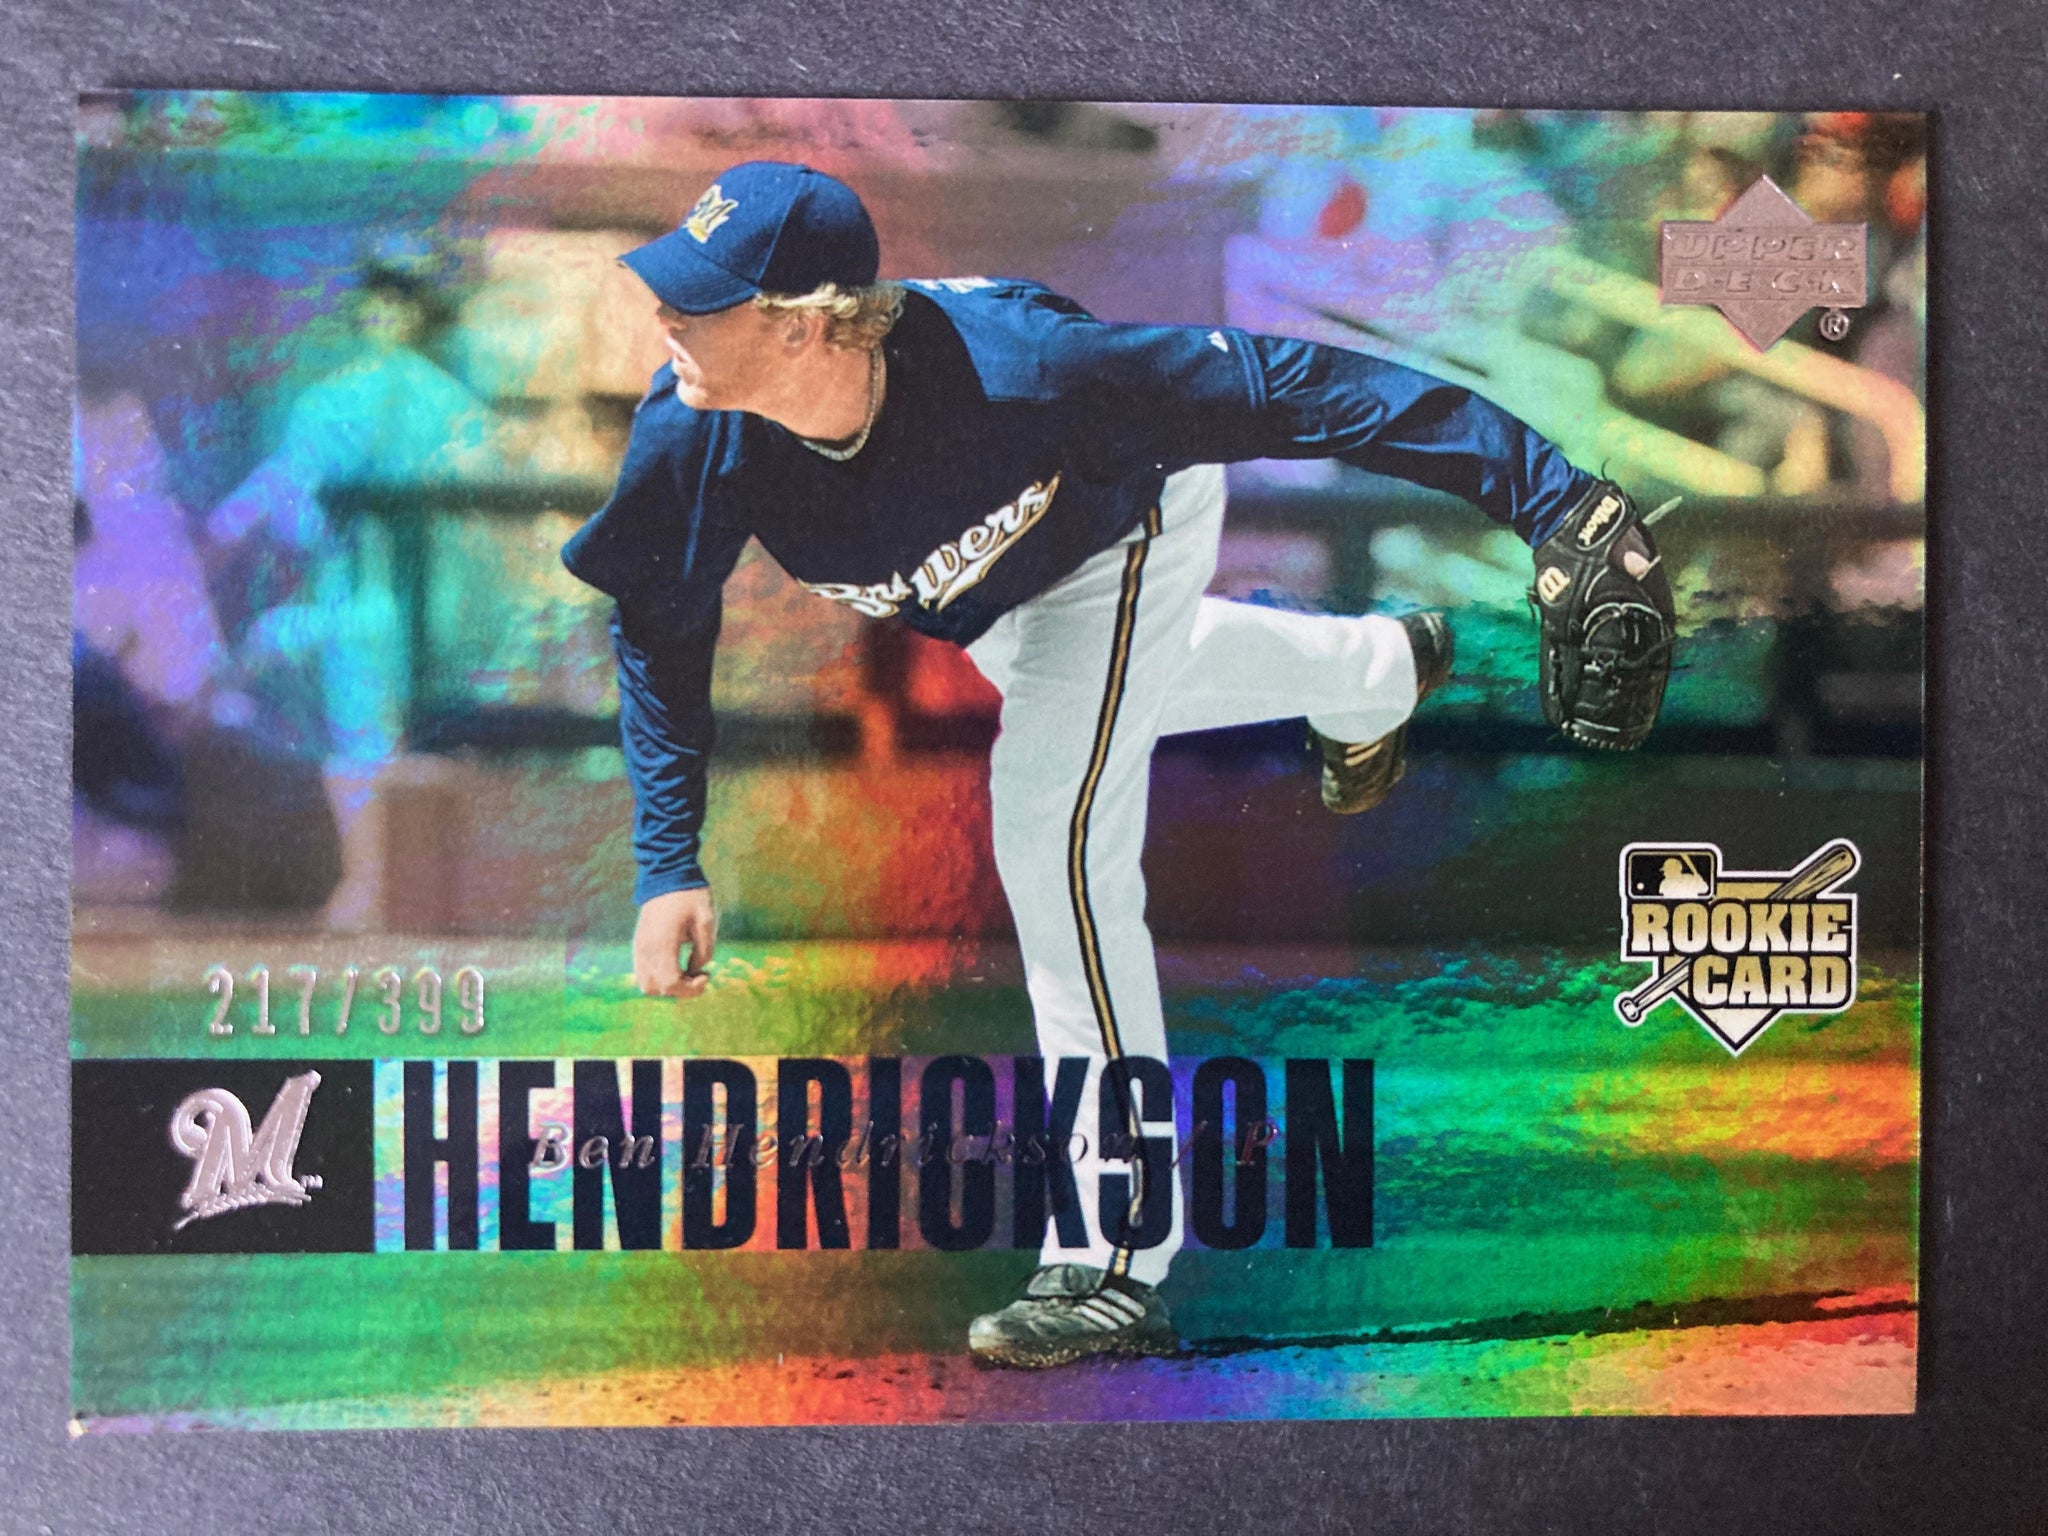 Ben Hendrickson #964 Rookie Card 2006 Milwaukee Brewers Upper Deck #d 217/399